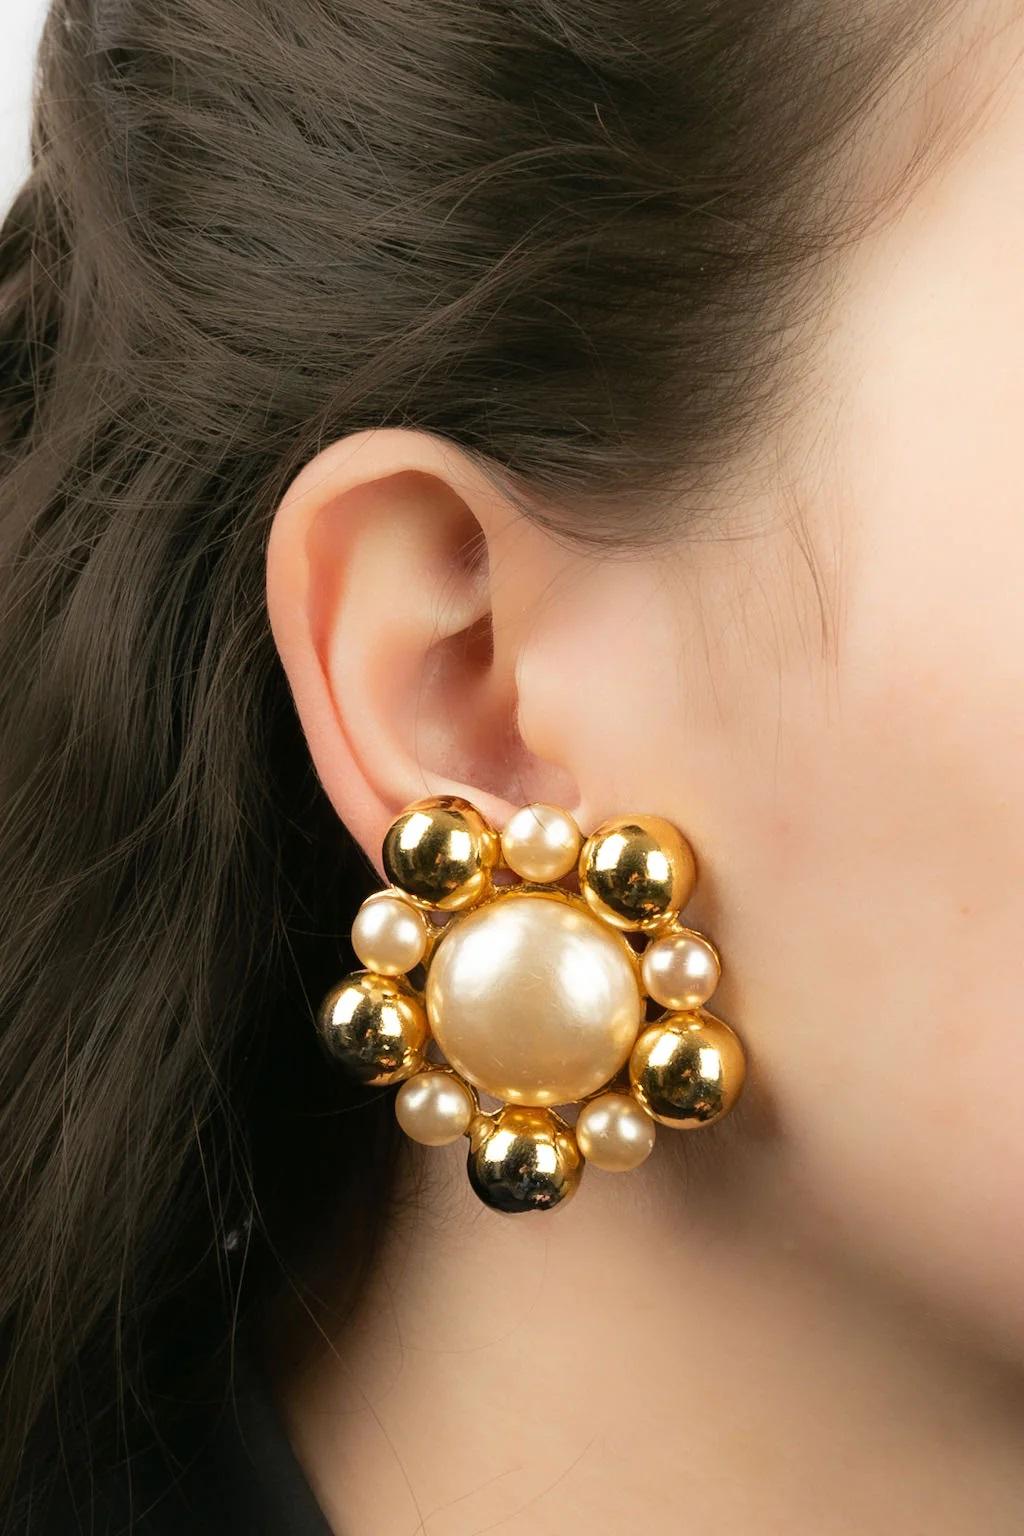 Chanel - (Made in France) Ohrringe mit Clips aus goldenem Metall und Perlencabochons. Collection'S 2cc5.

Zusätzliche Informationen:
Abmessungen: Ø 4 cm

Bedingung: 
Sehr guter Zustand

Verkäufer Ref Nummer: BOB31